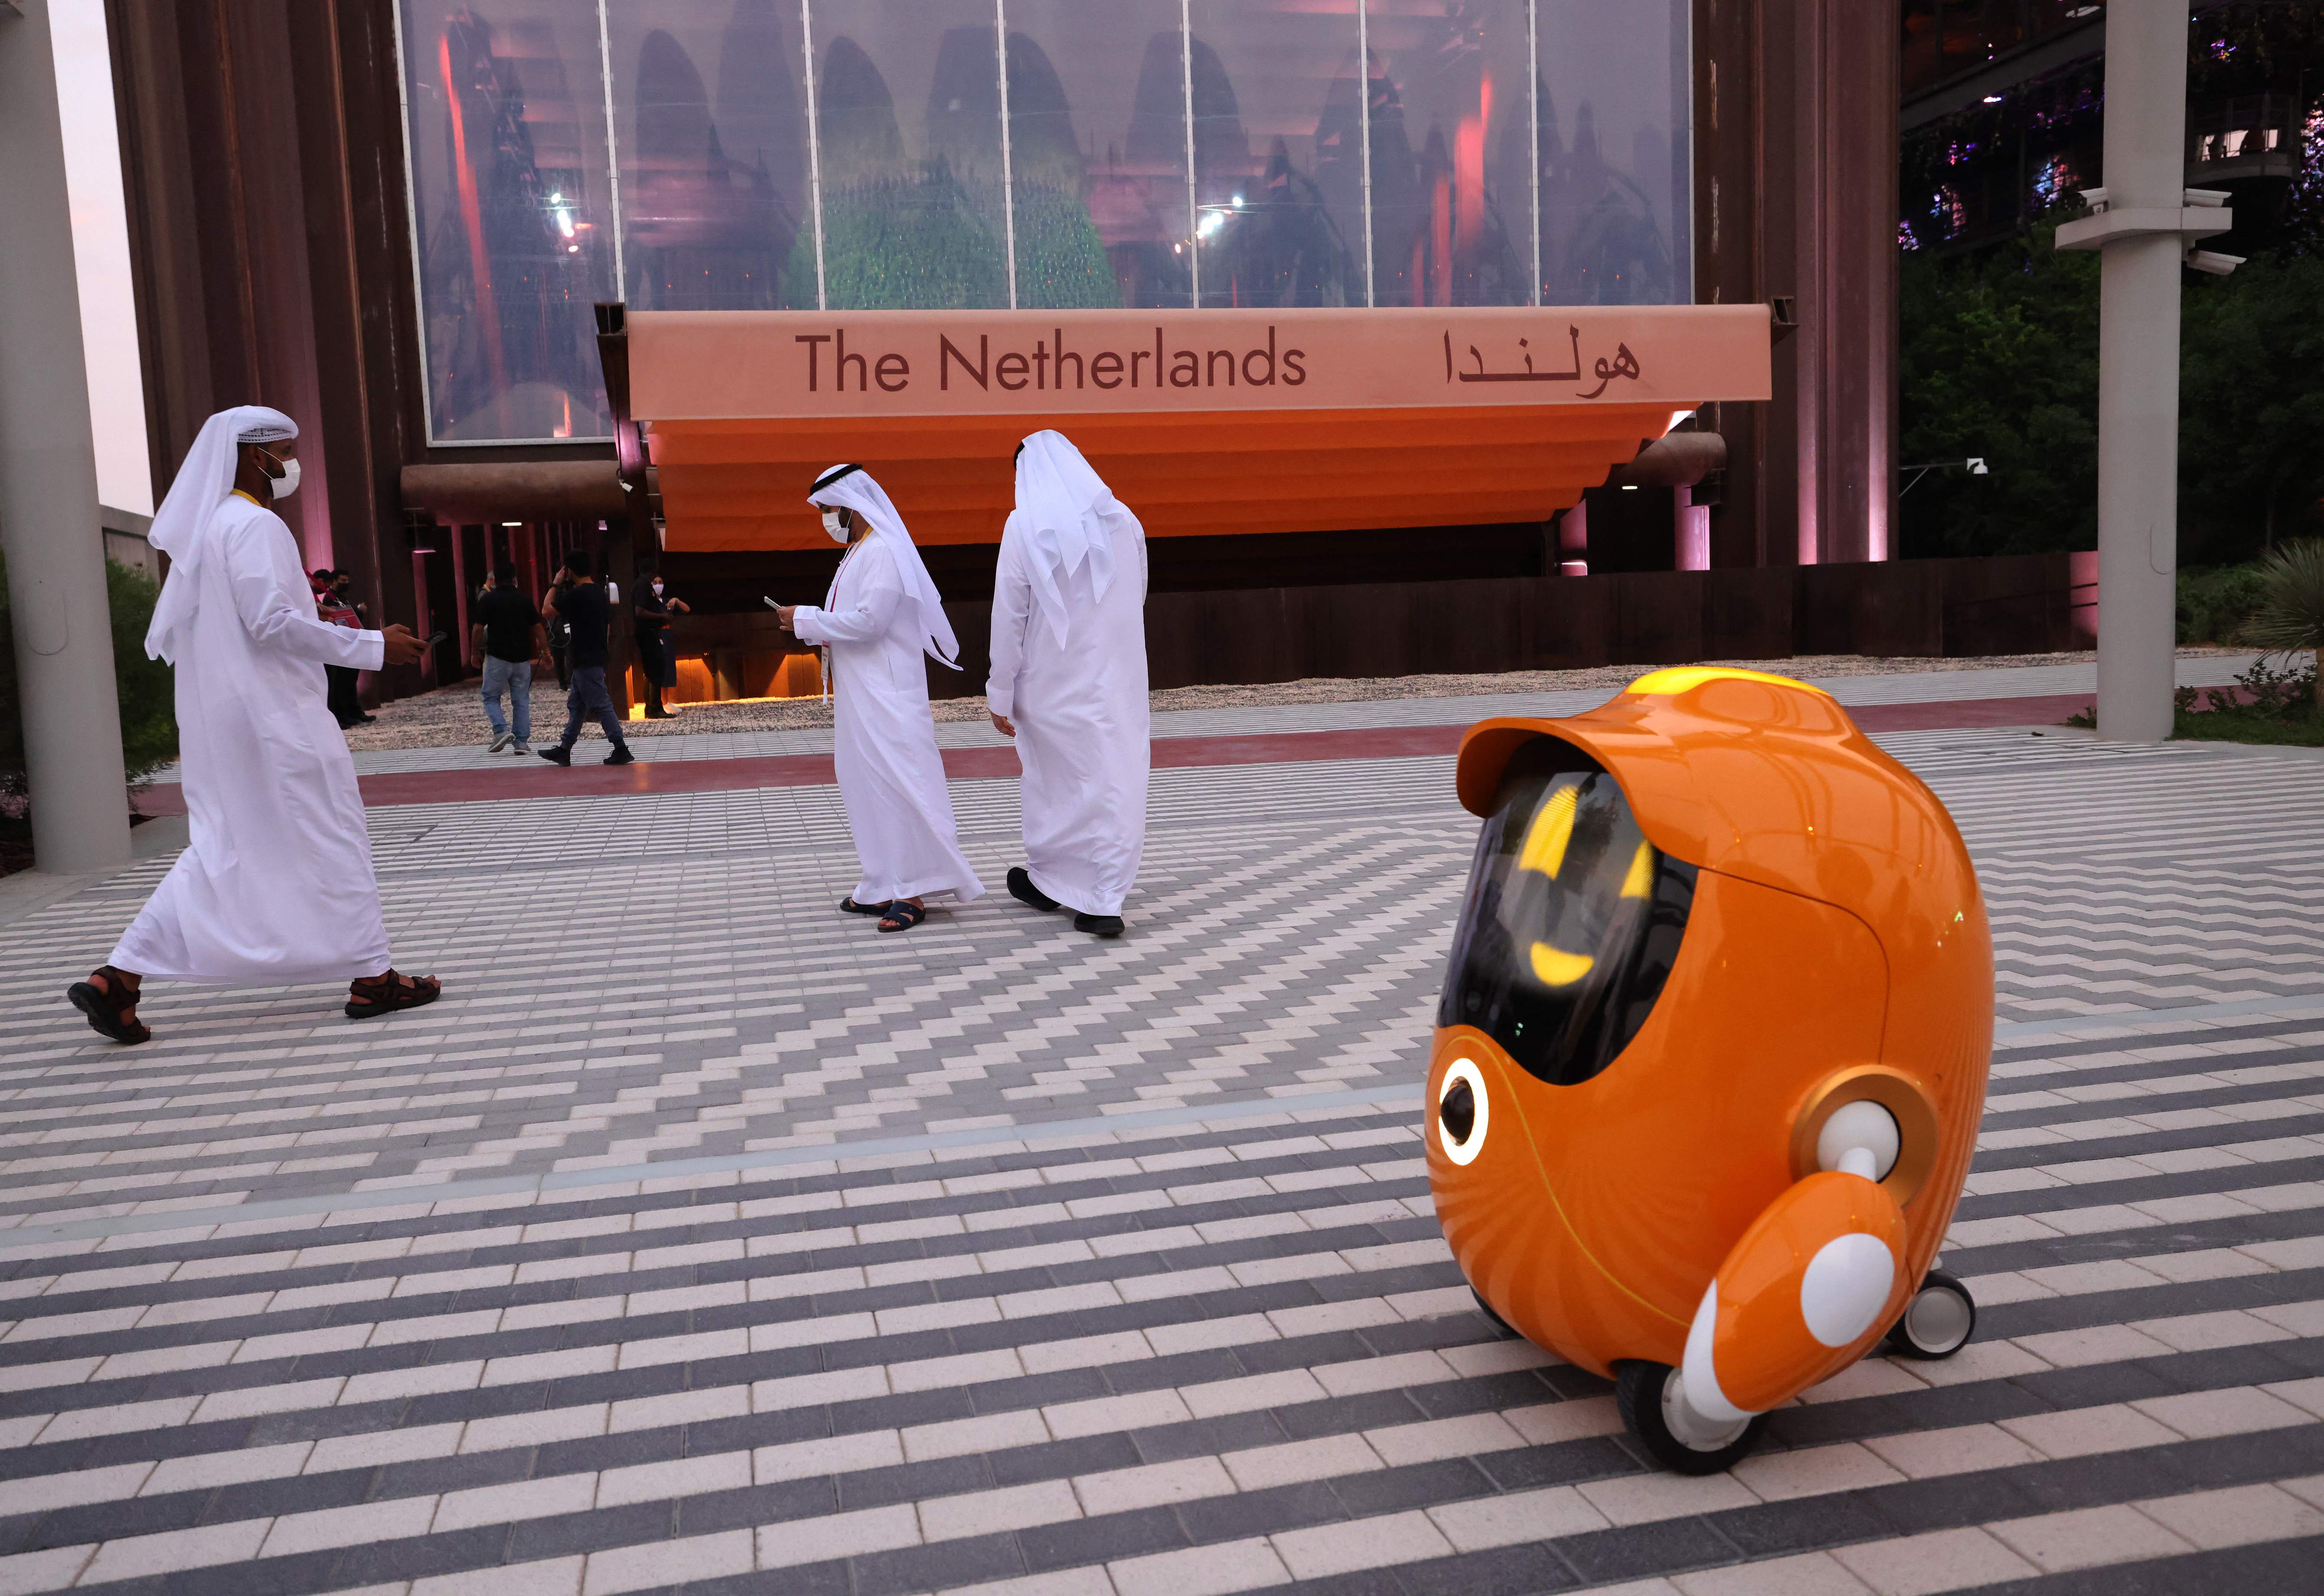 코로나19 여파로 예정보다 1년 늦게 아랍에미리트(UAE) 두바이에서 개최된 2020 세계엑스포에 방문한 관람객들이 오렌지색 로봇이 안내하는 네덜란드관 앞을 지나고 있다. 두바이 AFP 연합뉴스